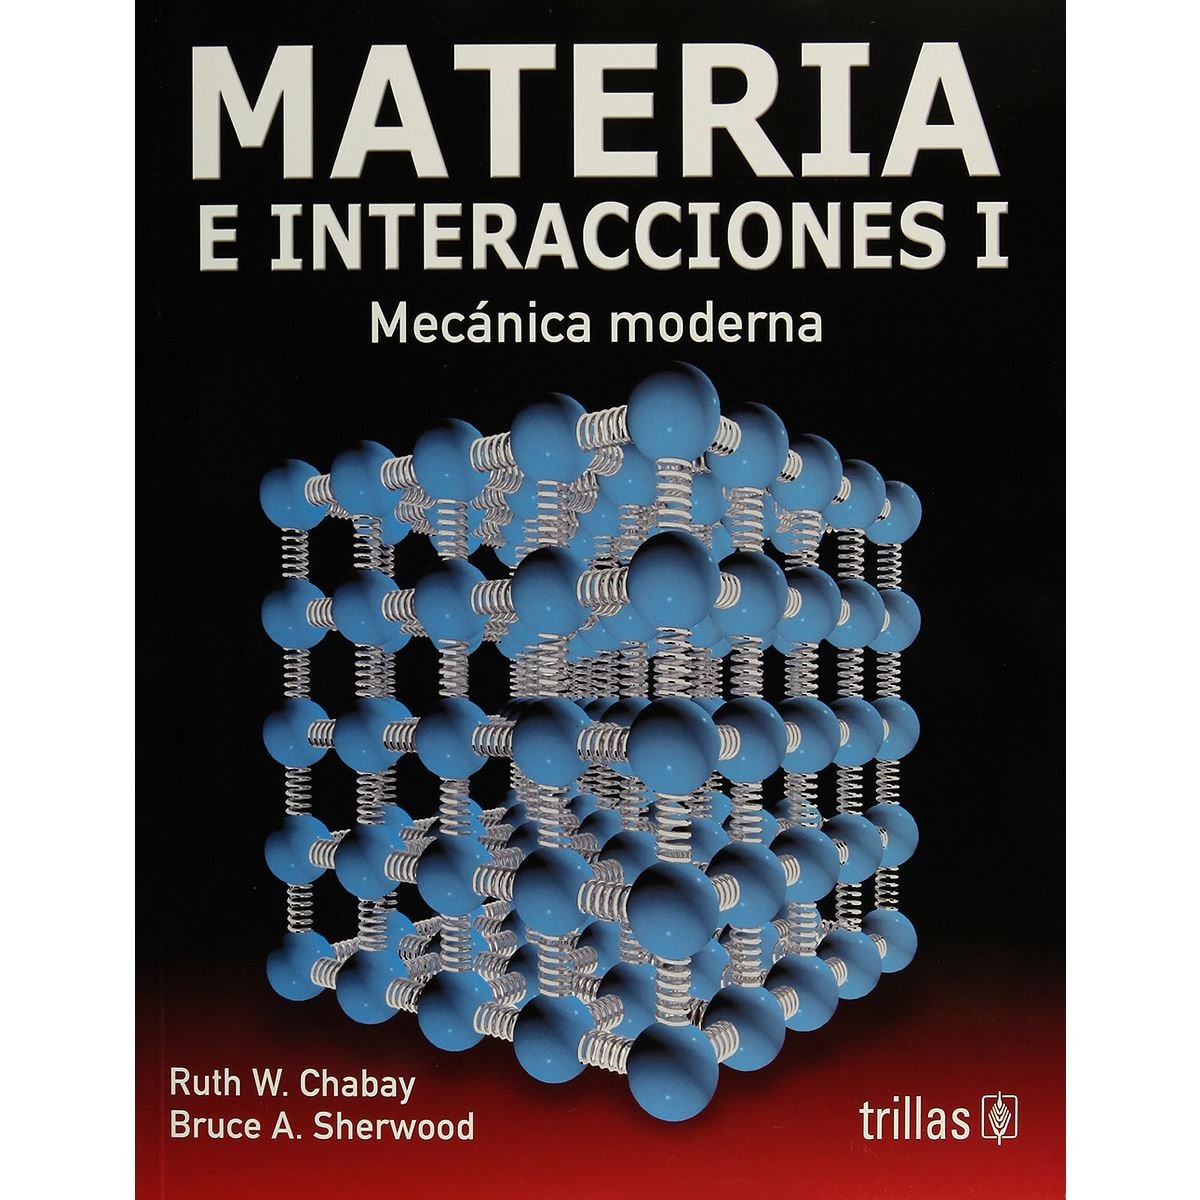 Materia E Interacciones 1